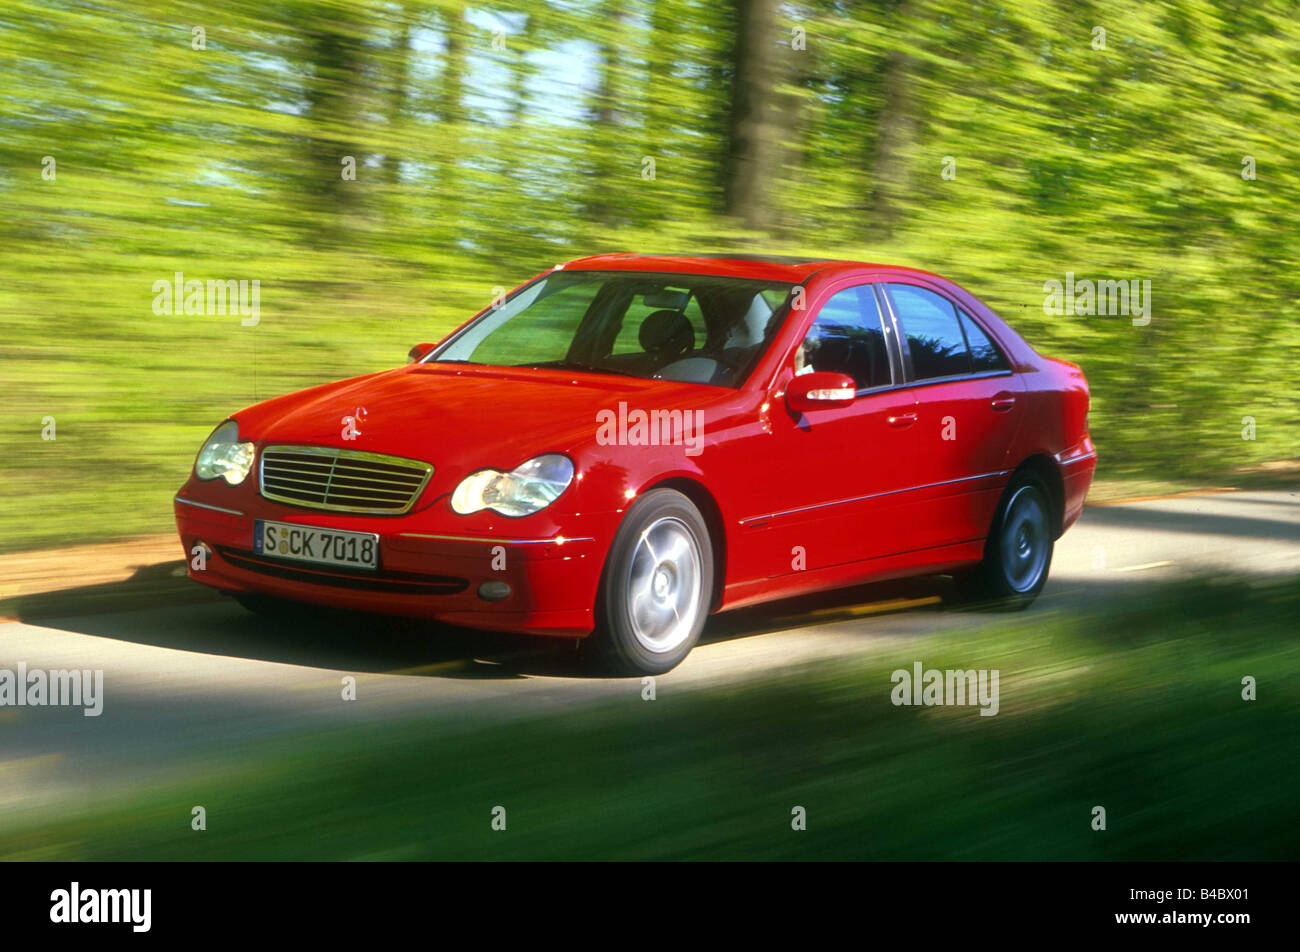 Voiture, Mercedes C 200 compresseur, Limousine, la classe moyenne, l'année de modèle 2000-, rouge, la conduite, la diagonale de l'avant, route de campagne Banque D'Images